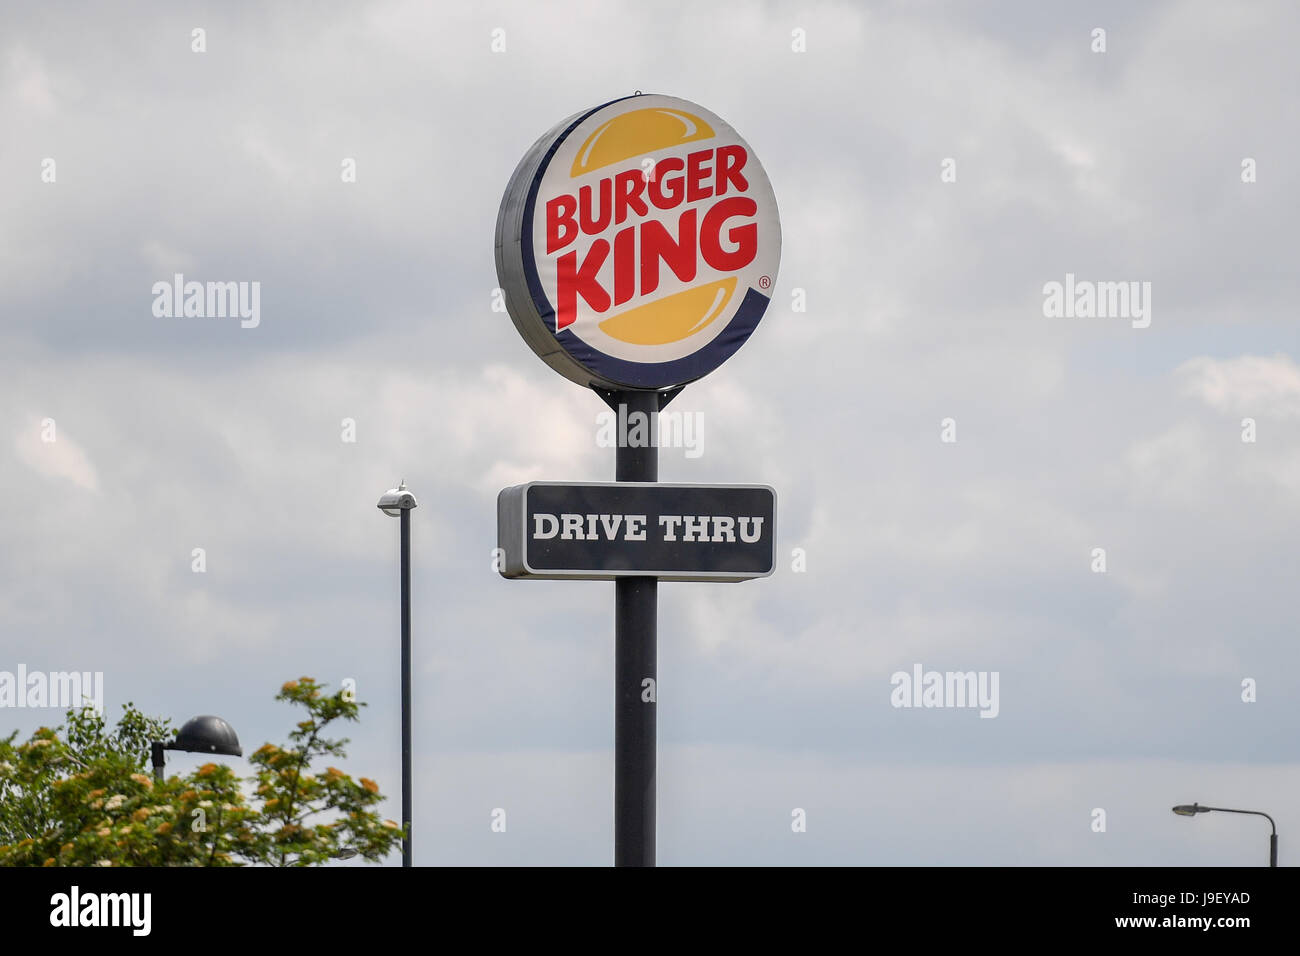 Burger King, fast food restaurant sign Banque D'Images